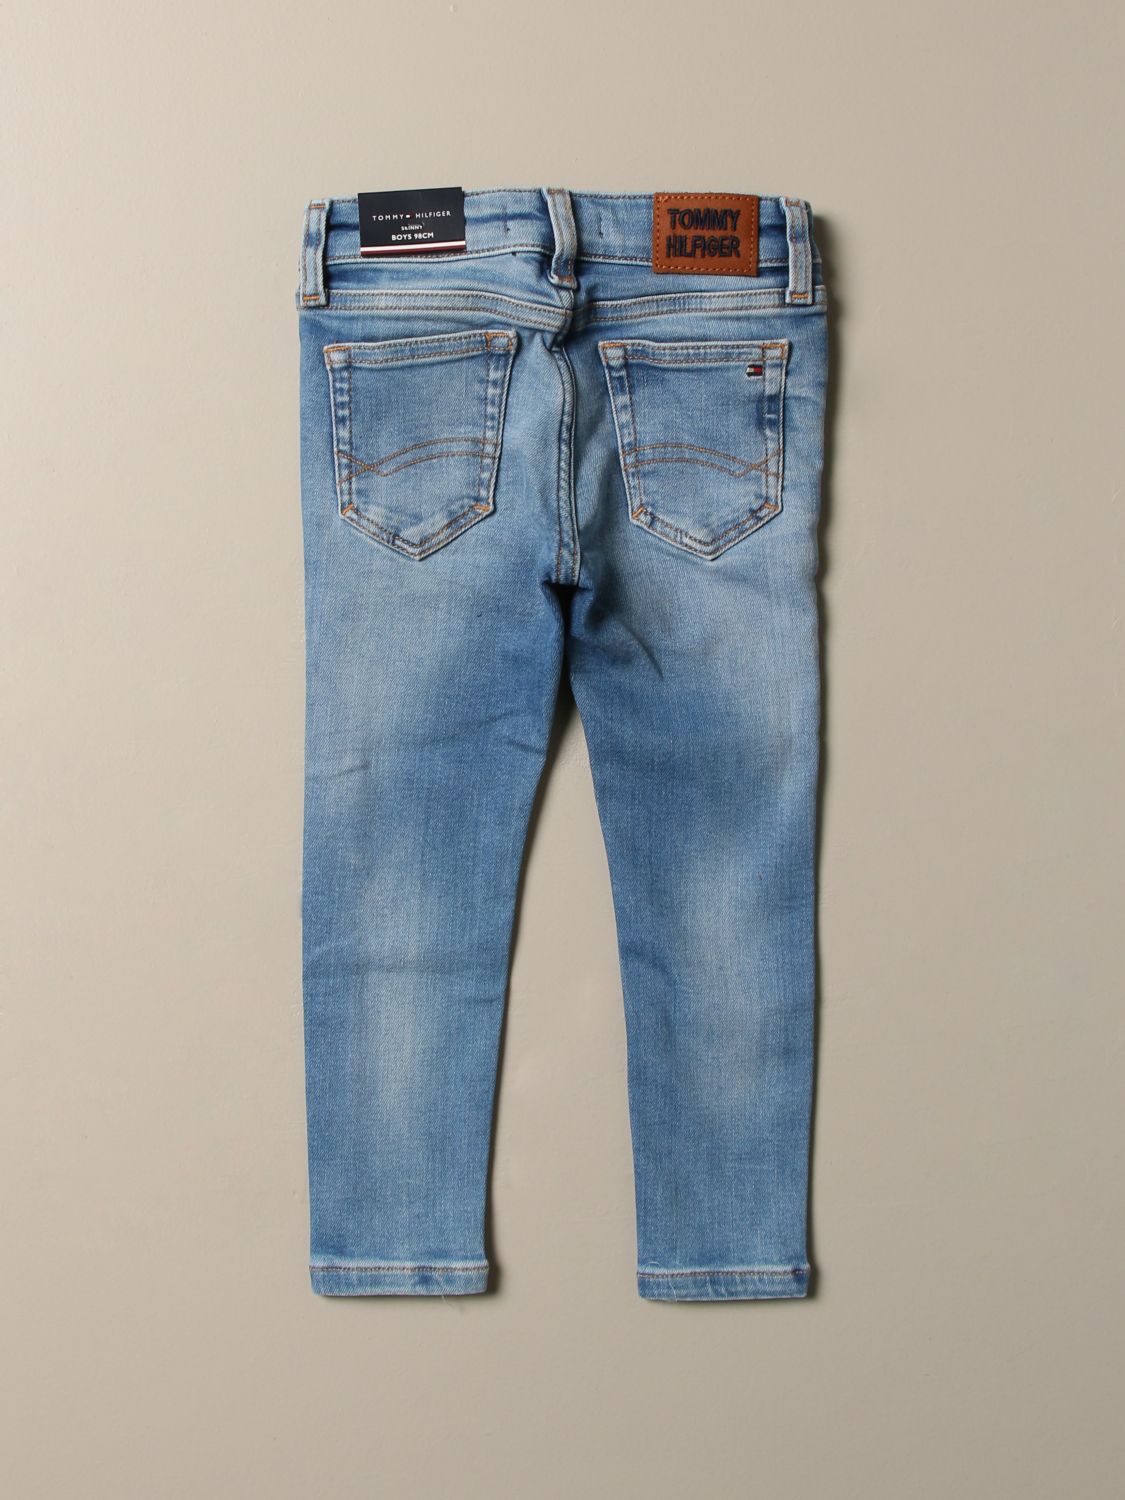 TOMMY HILFIGER: jeans in used denim | Jeans Tommy Hilfiger Kids Denim